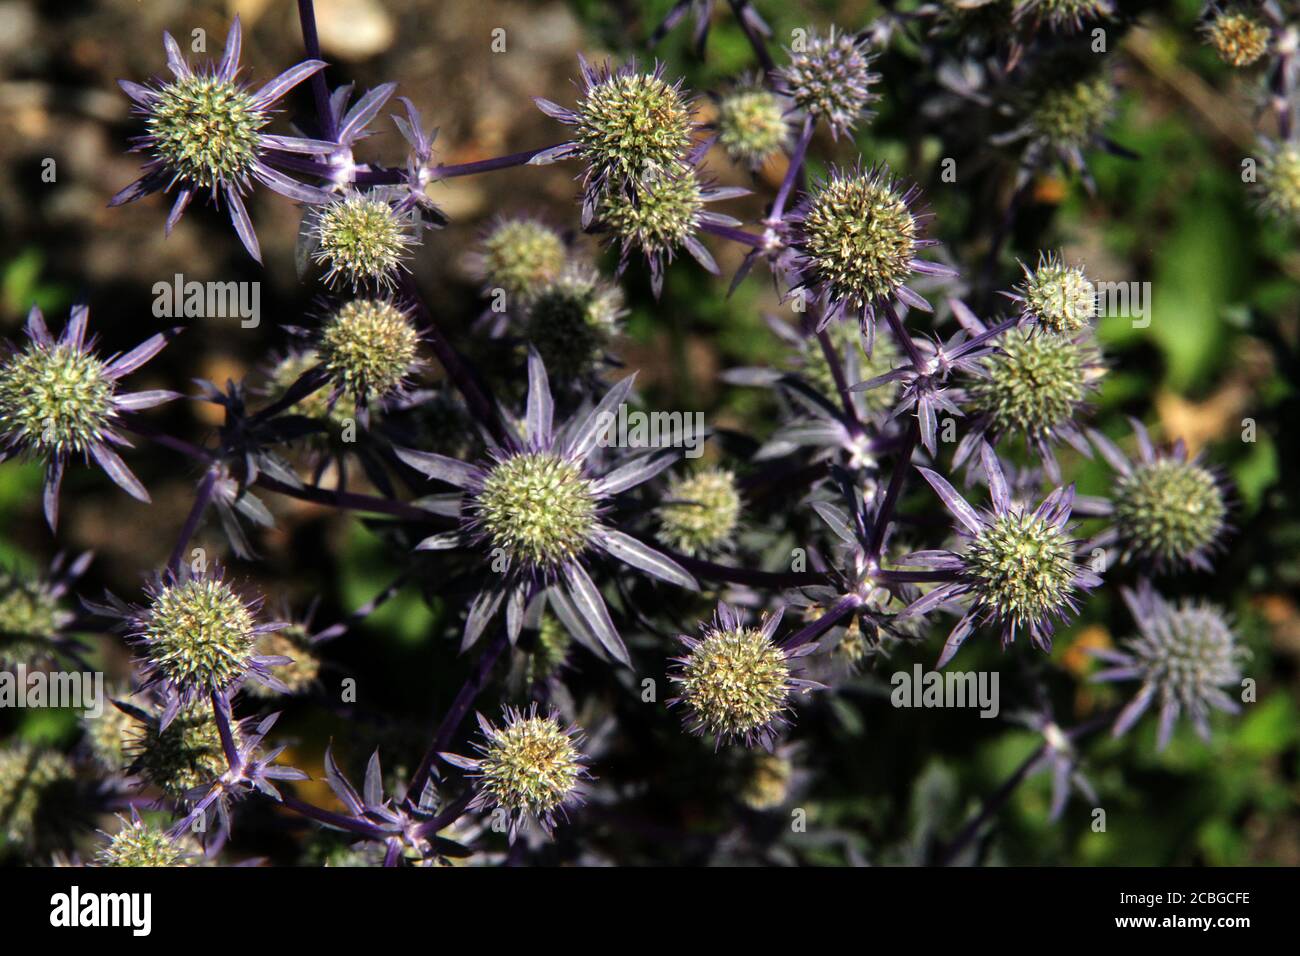 Eryngium Planum (Blue Hobbit/ Alpinum Sea Holly) in bloom Stock Photo